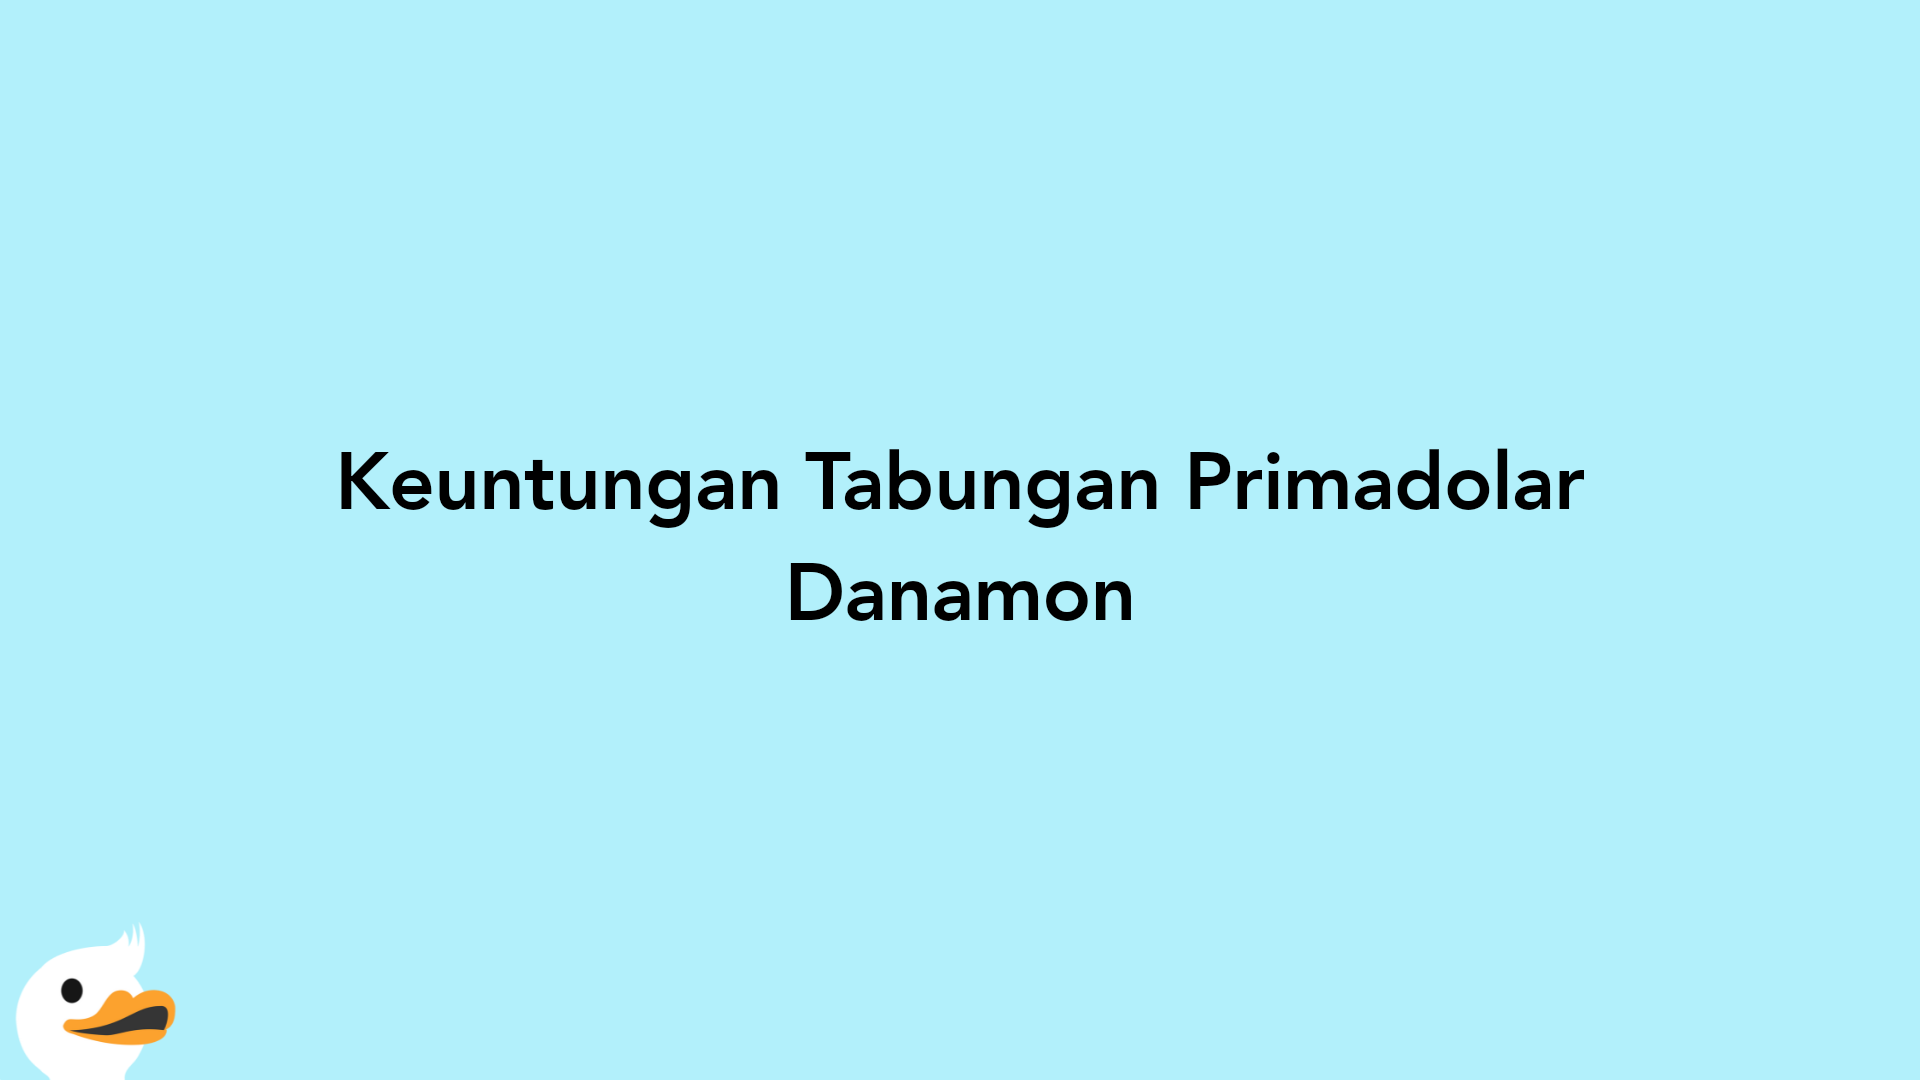 Keuntungan Tabungan Primadolar Danamon